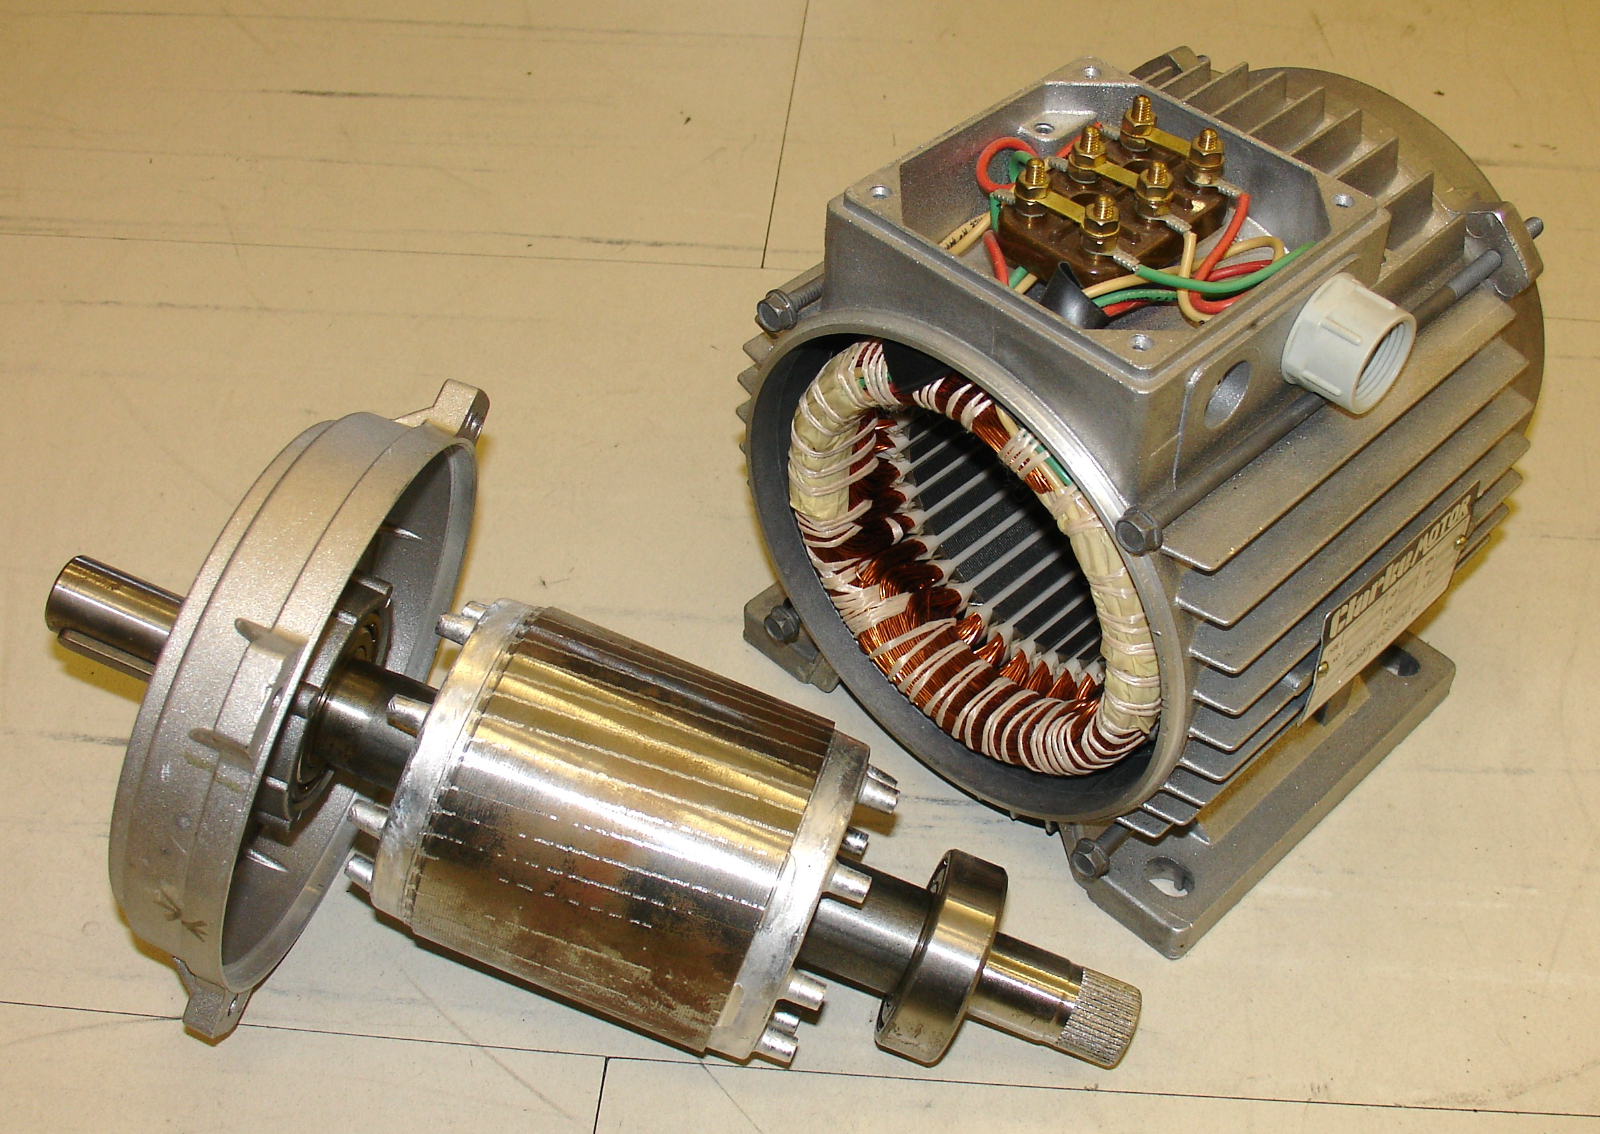 Motore asincrono trifase con rotore a gabbia di scoiattolo in alluminio per applicazioni industriali.